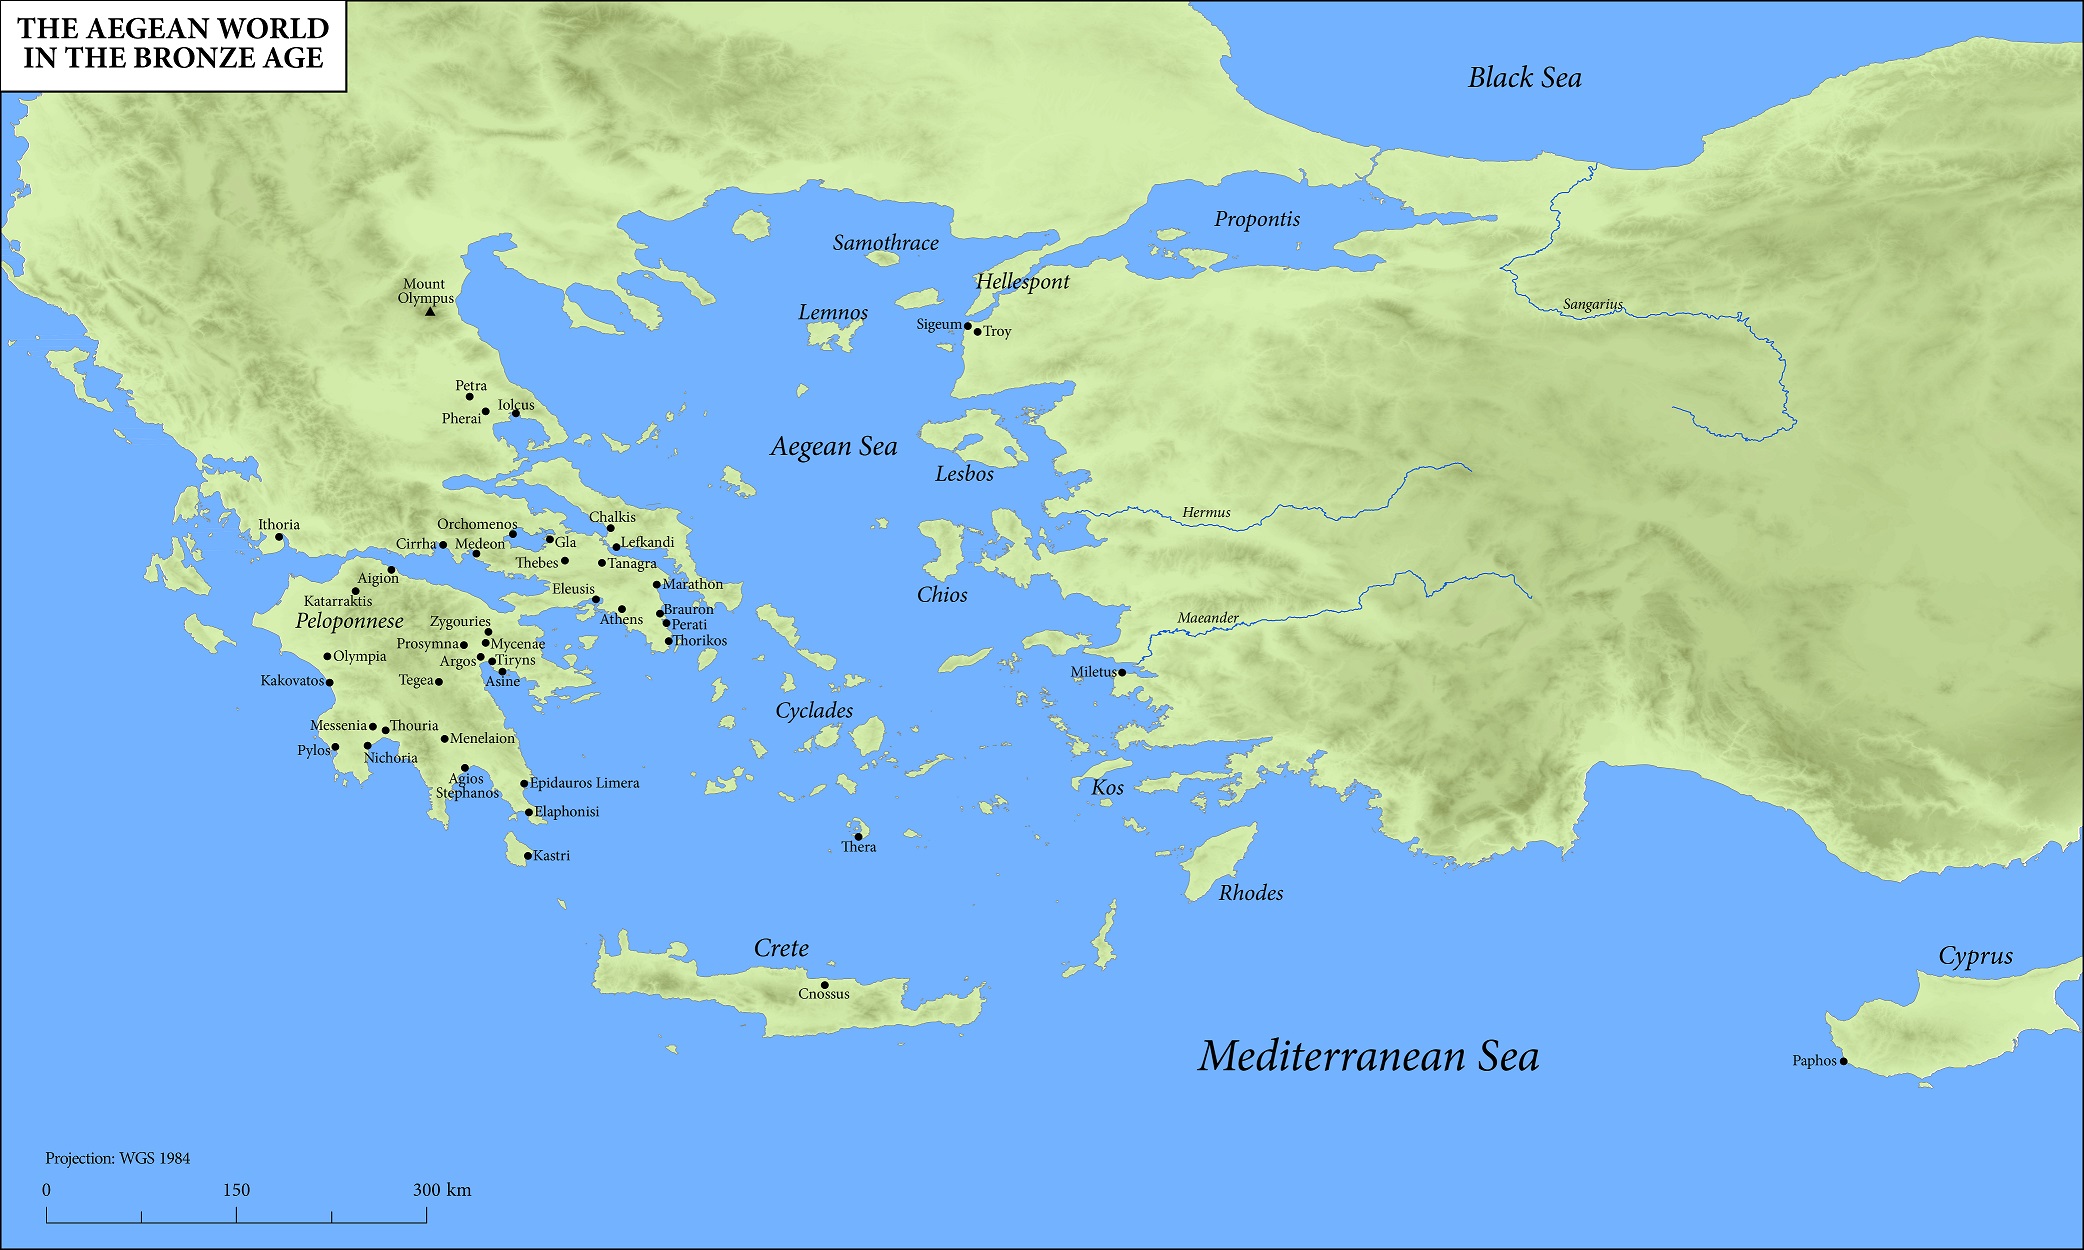 Реки И Моря Древней Греции